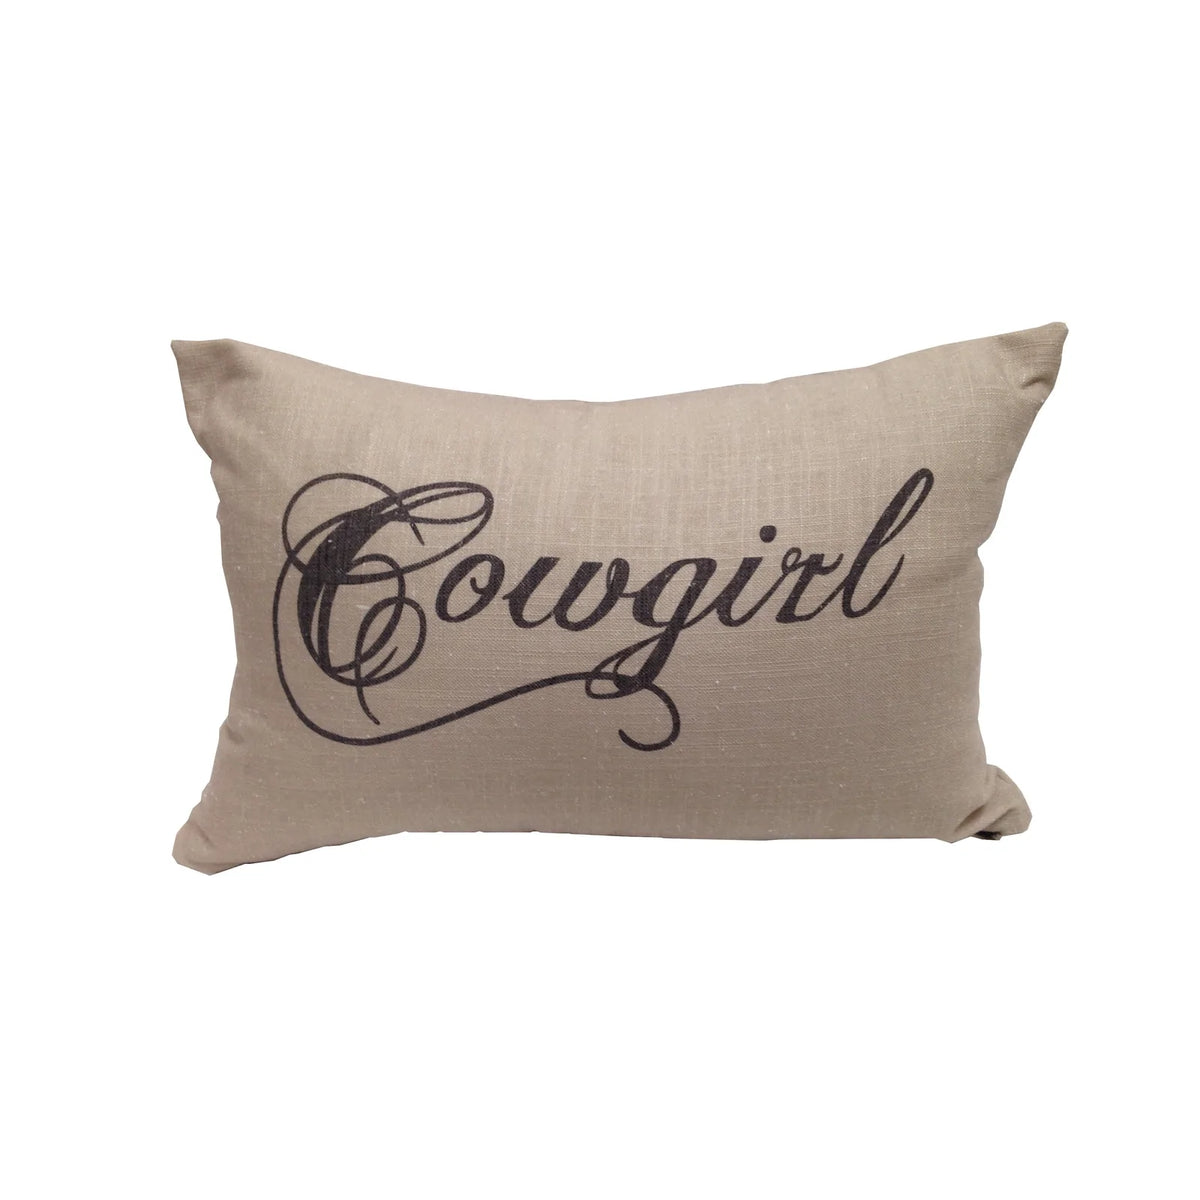 Cowboy/Cowgirl Linen Lumbar Pillow